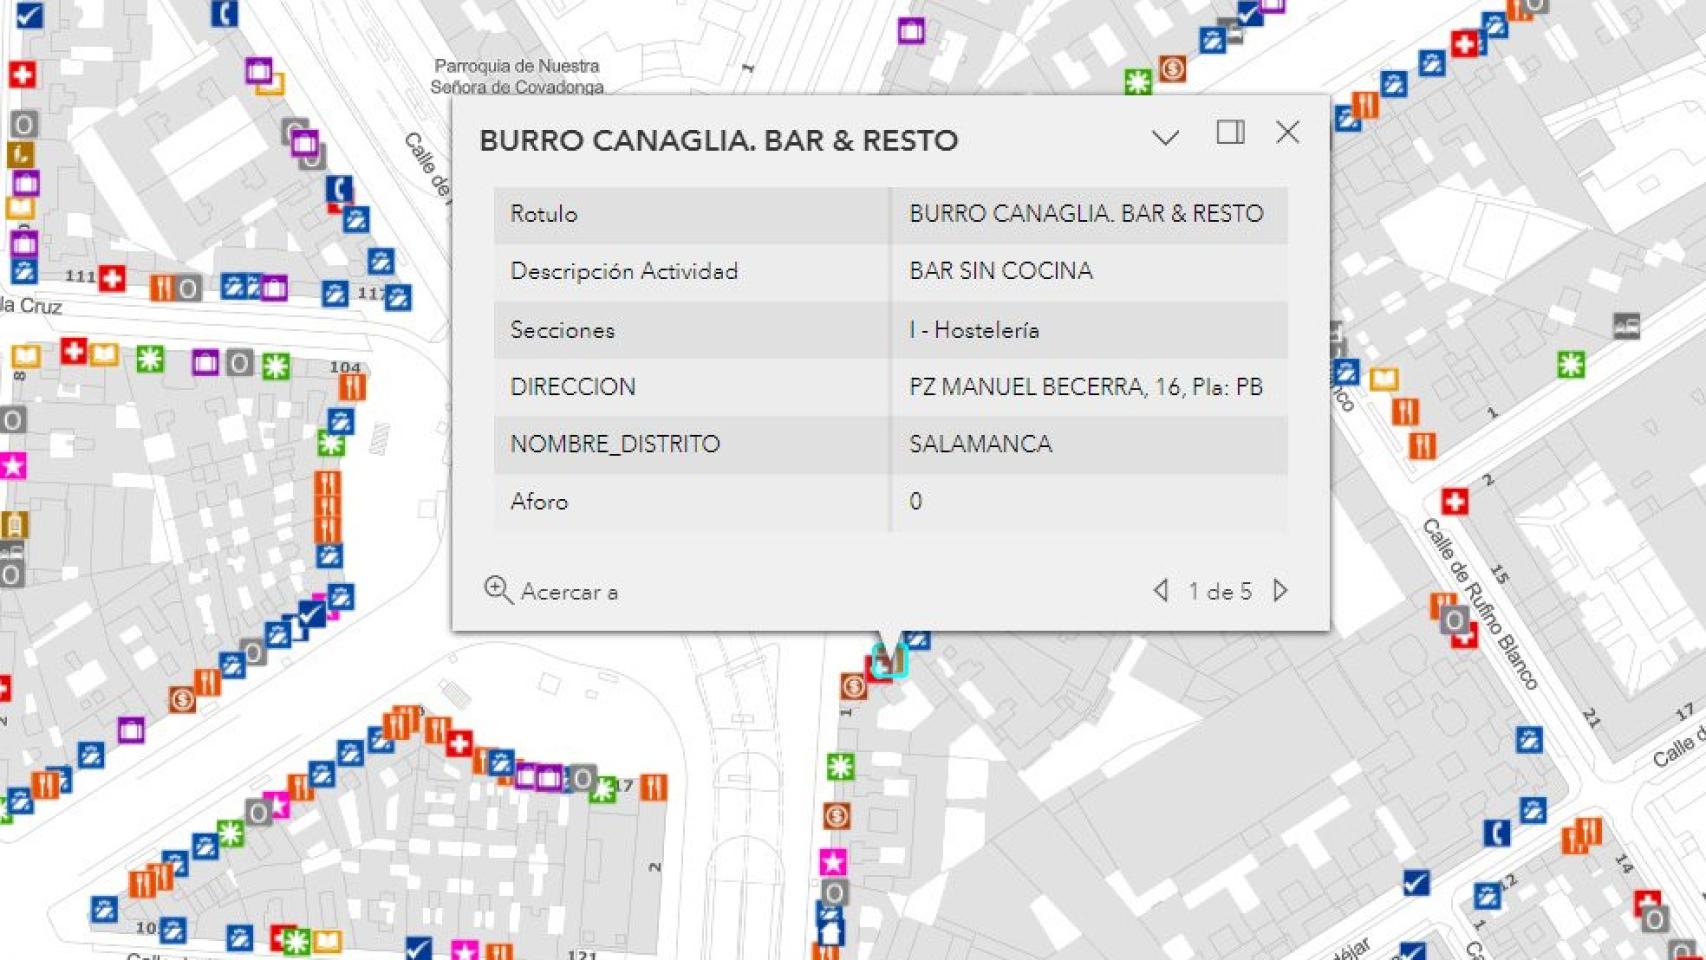 Web de censo de locales del Ayuntamiento de Madrid, con la información del Burro Canaglia